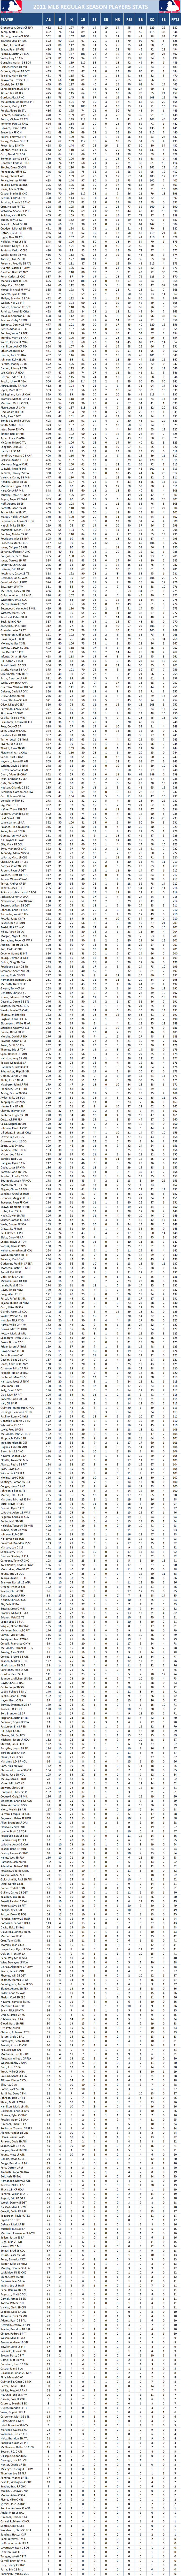 2011 Major League Baseball Pool Season Player Stats